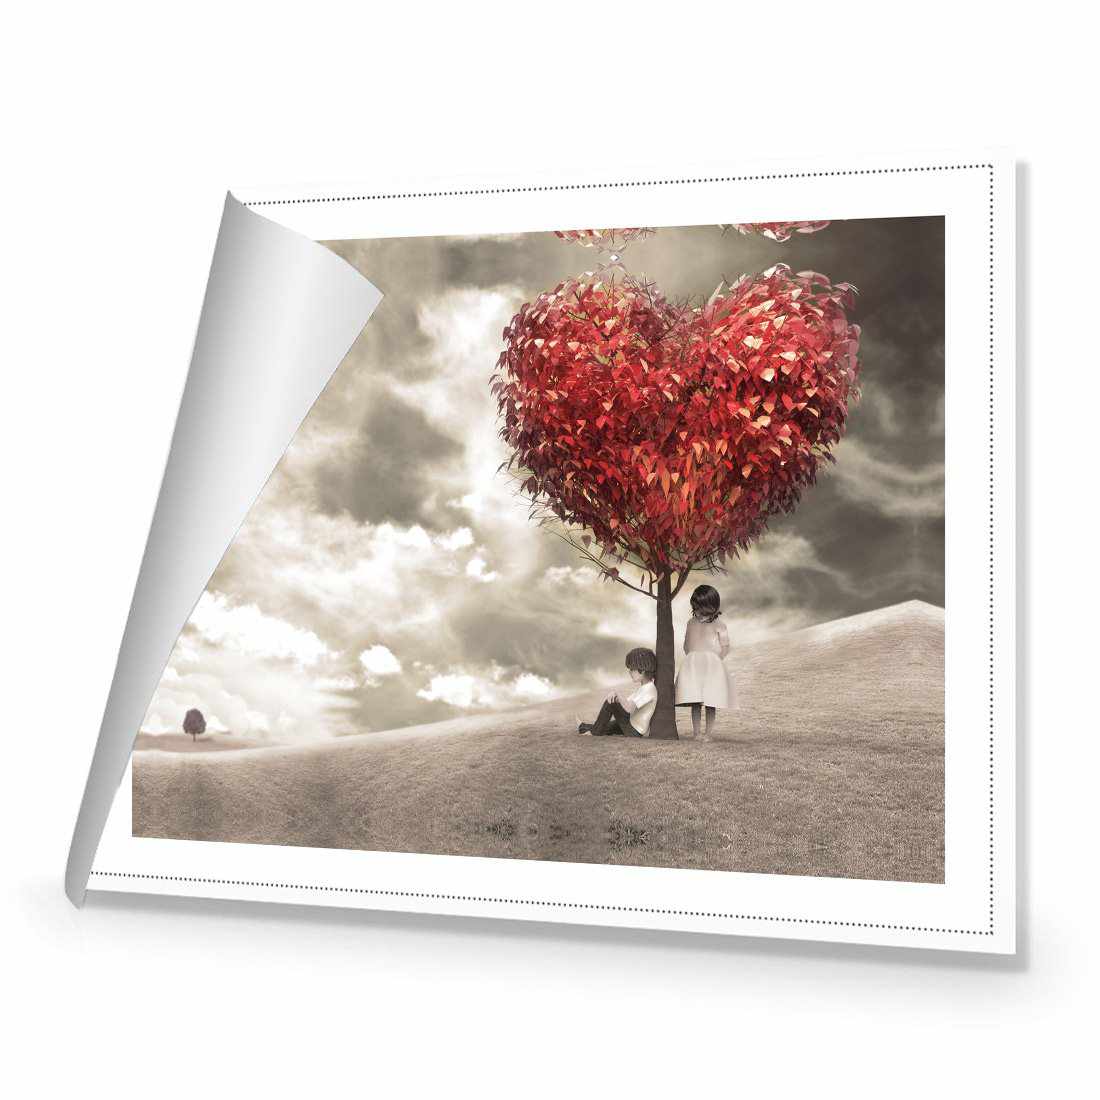 The Heart Tree Canvas Art-Canvas-Wall Art Designs-45x30cm-Rolled Canvas-Wall Art Designs